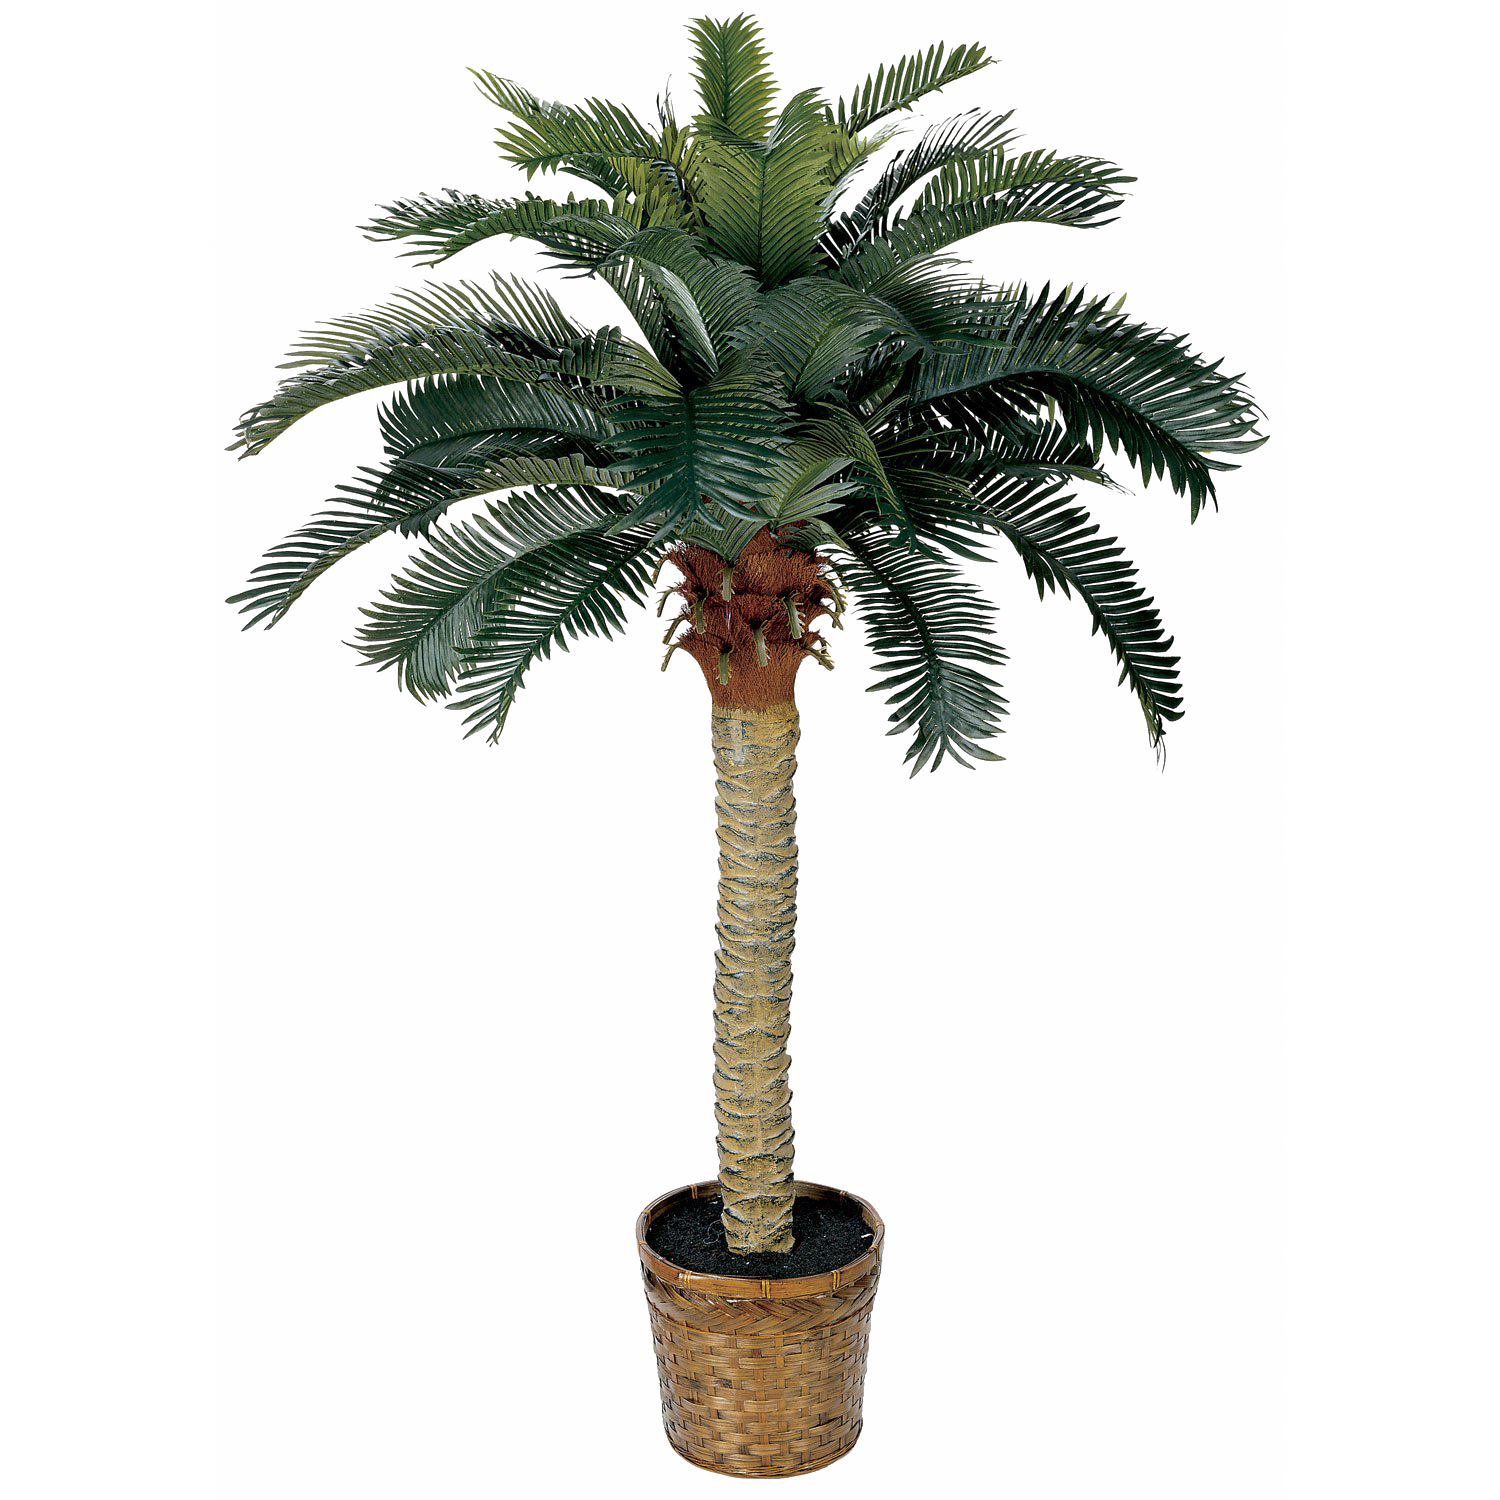 Palm Дерево фон PNG Image